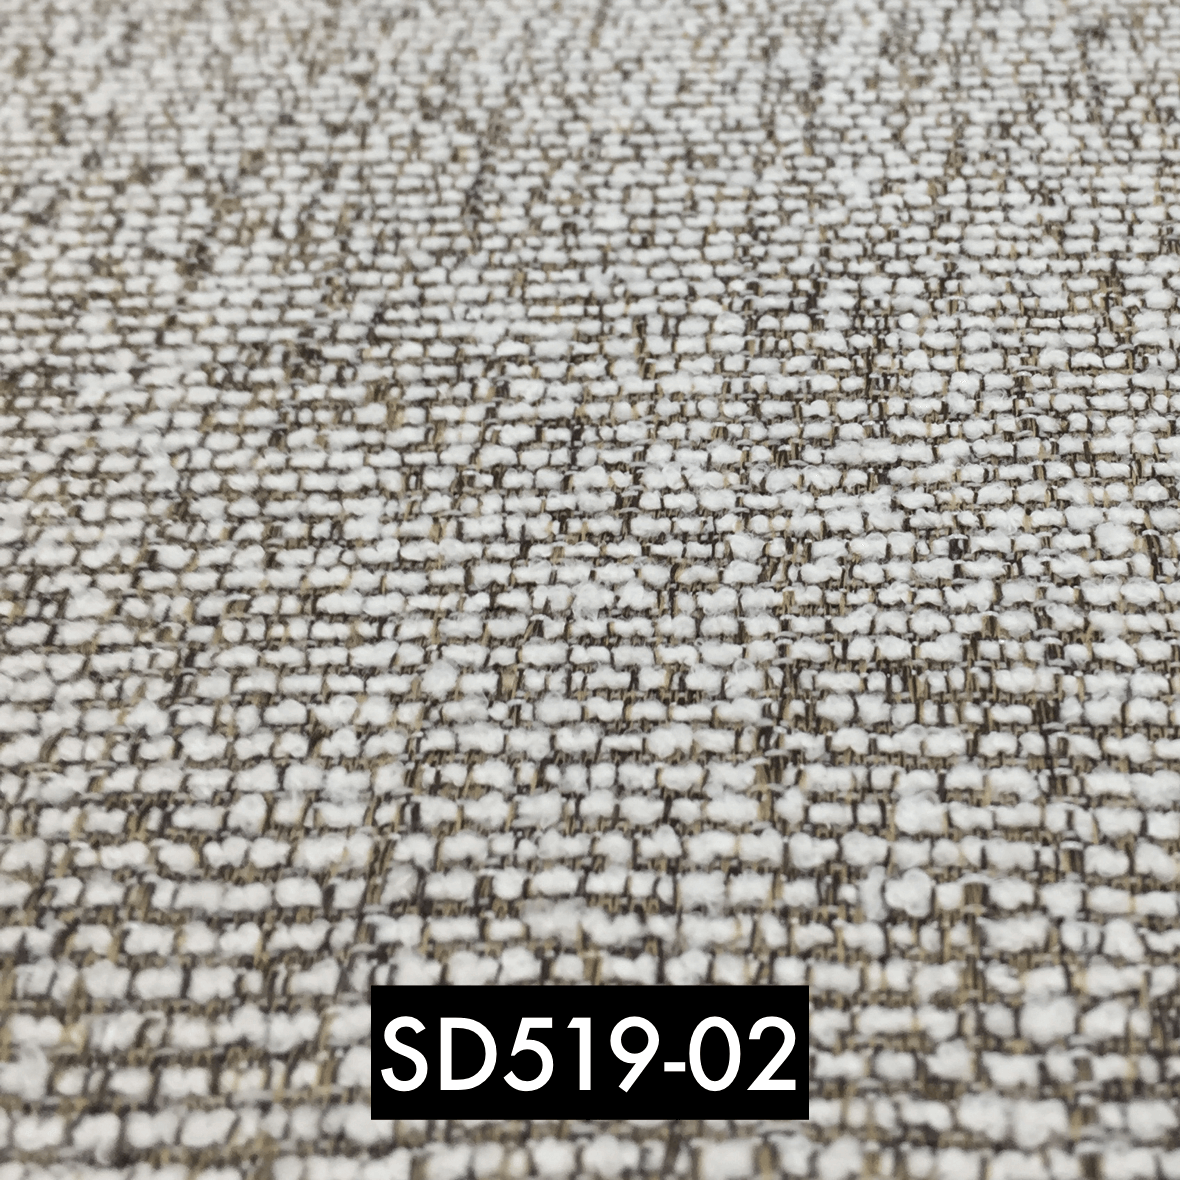 SD519-02